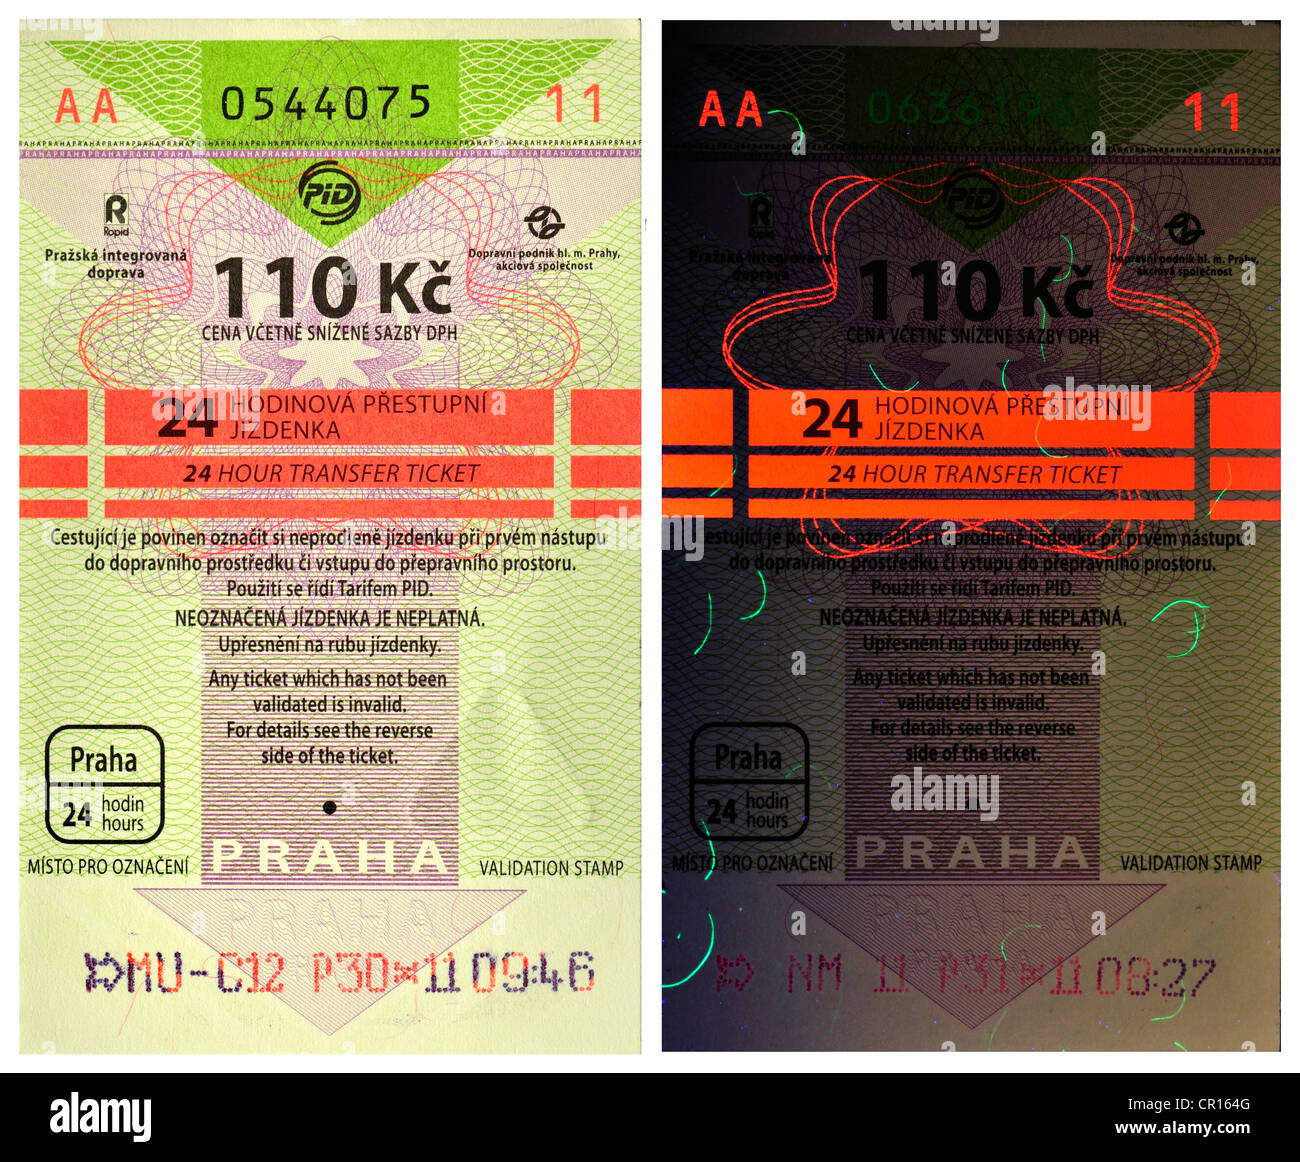 Tickets de transports à Prague - ticket 24h - 110kc couronnes. Fonctionnalités de sécurité sous lumière UV (à droite) Banque D'Images